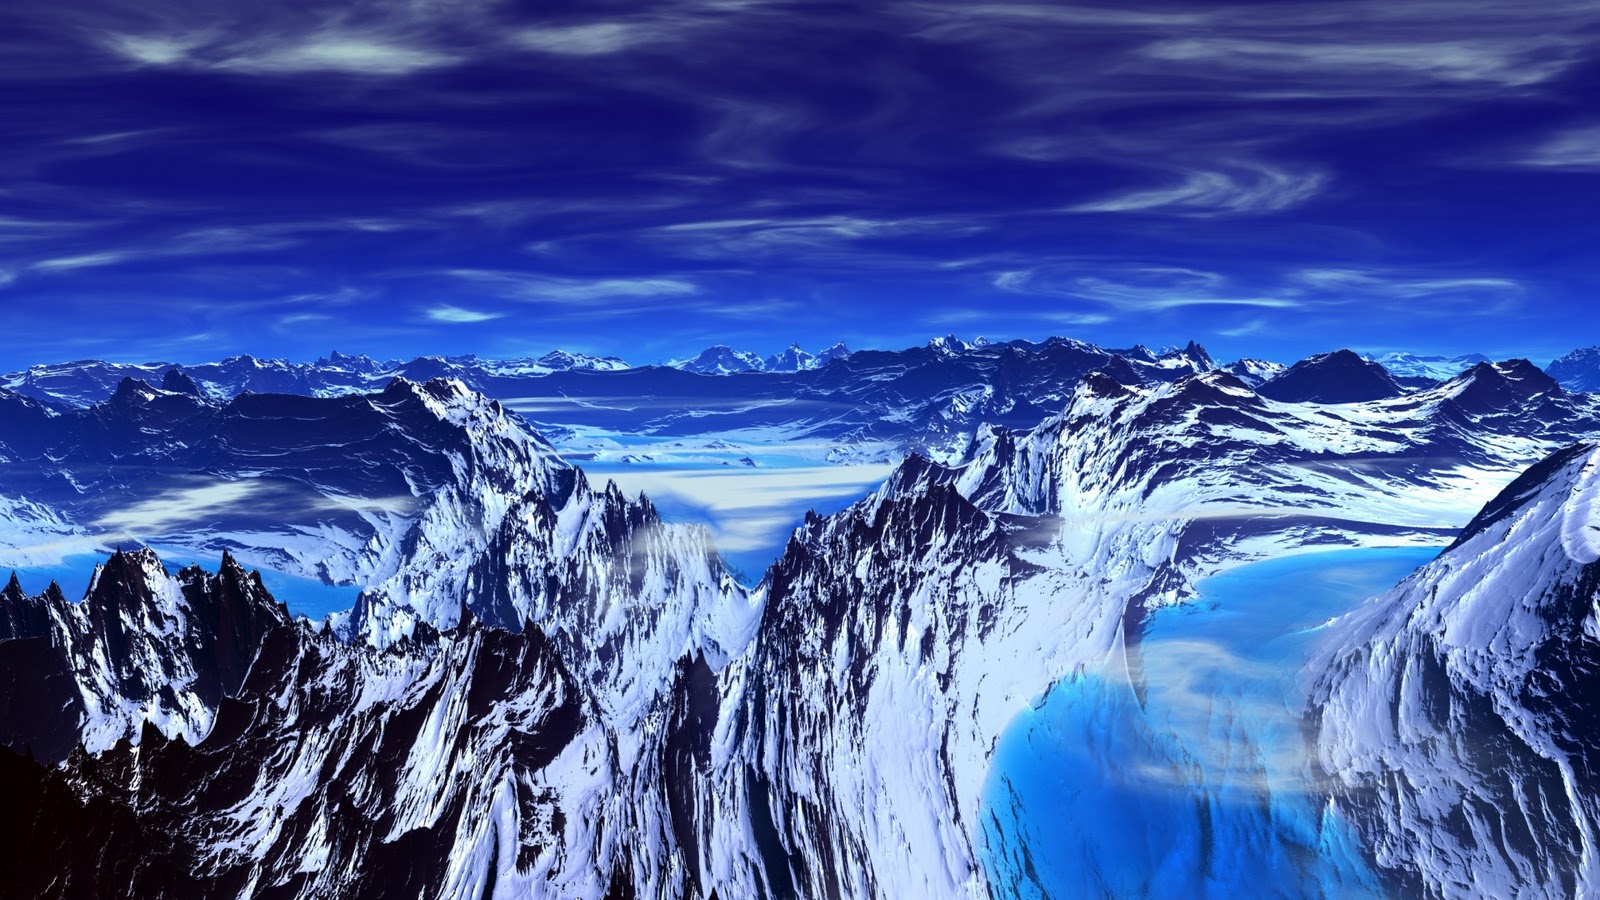  blue mountain lake wallpaper wallpaper me blue mountain desktop